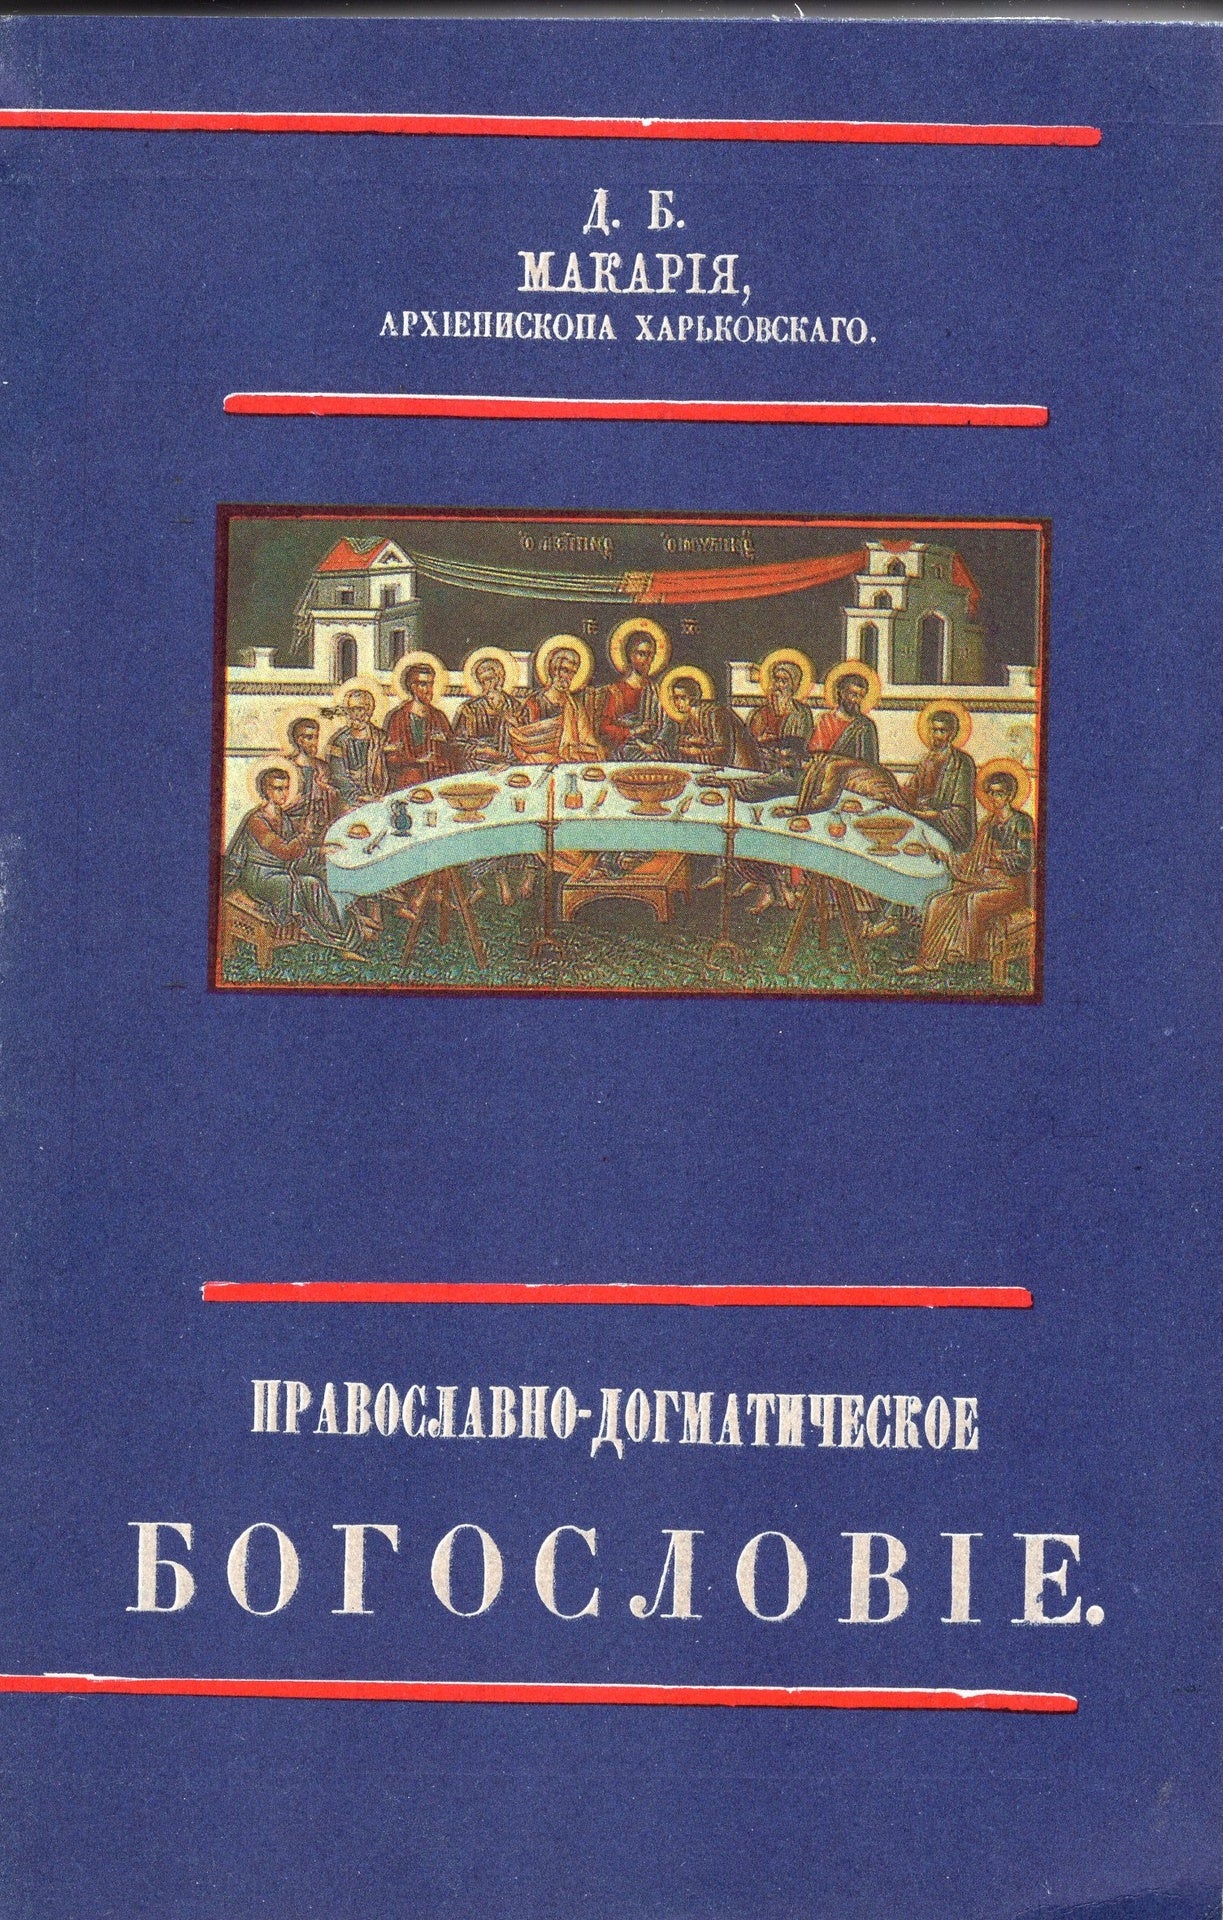 Православное Догматическое Богословие (в 2-х томах)